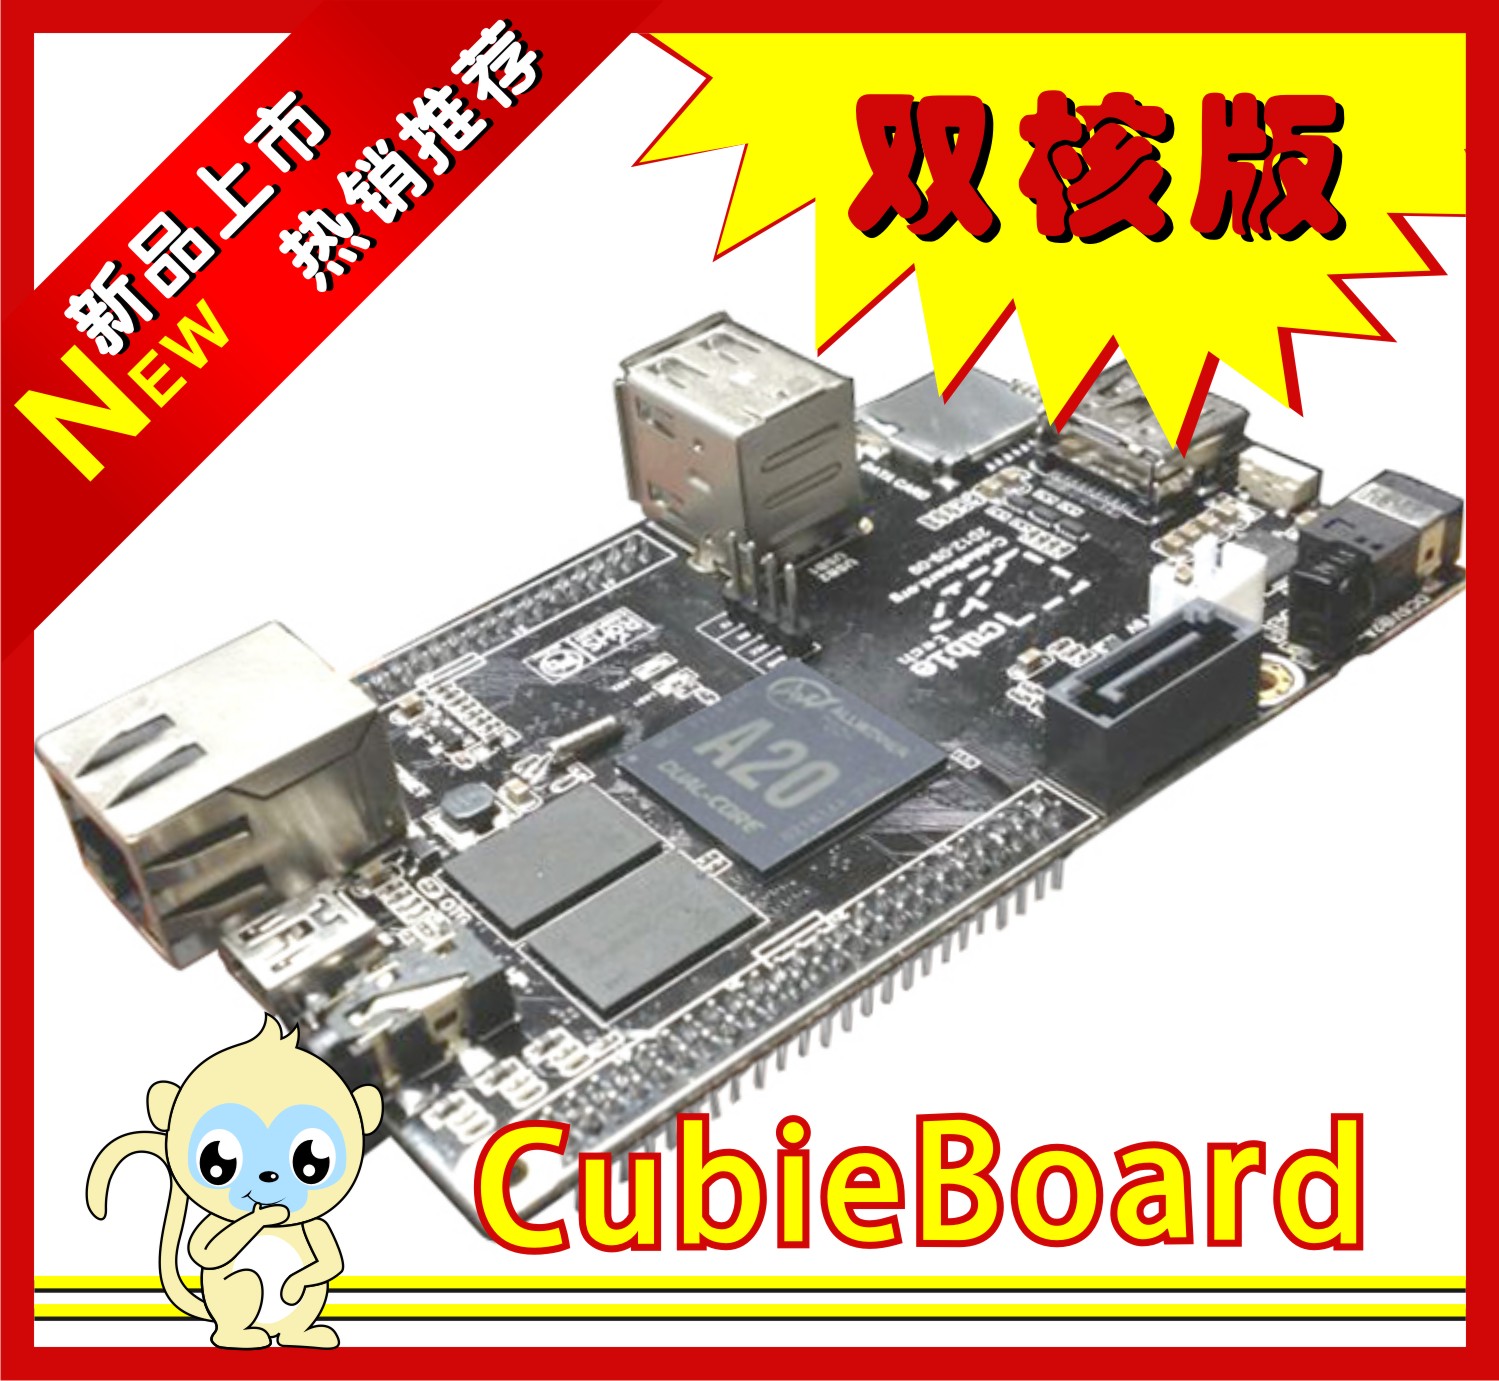 cubieboard2双核A20 ARM Cortex-A7开发板,超